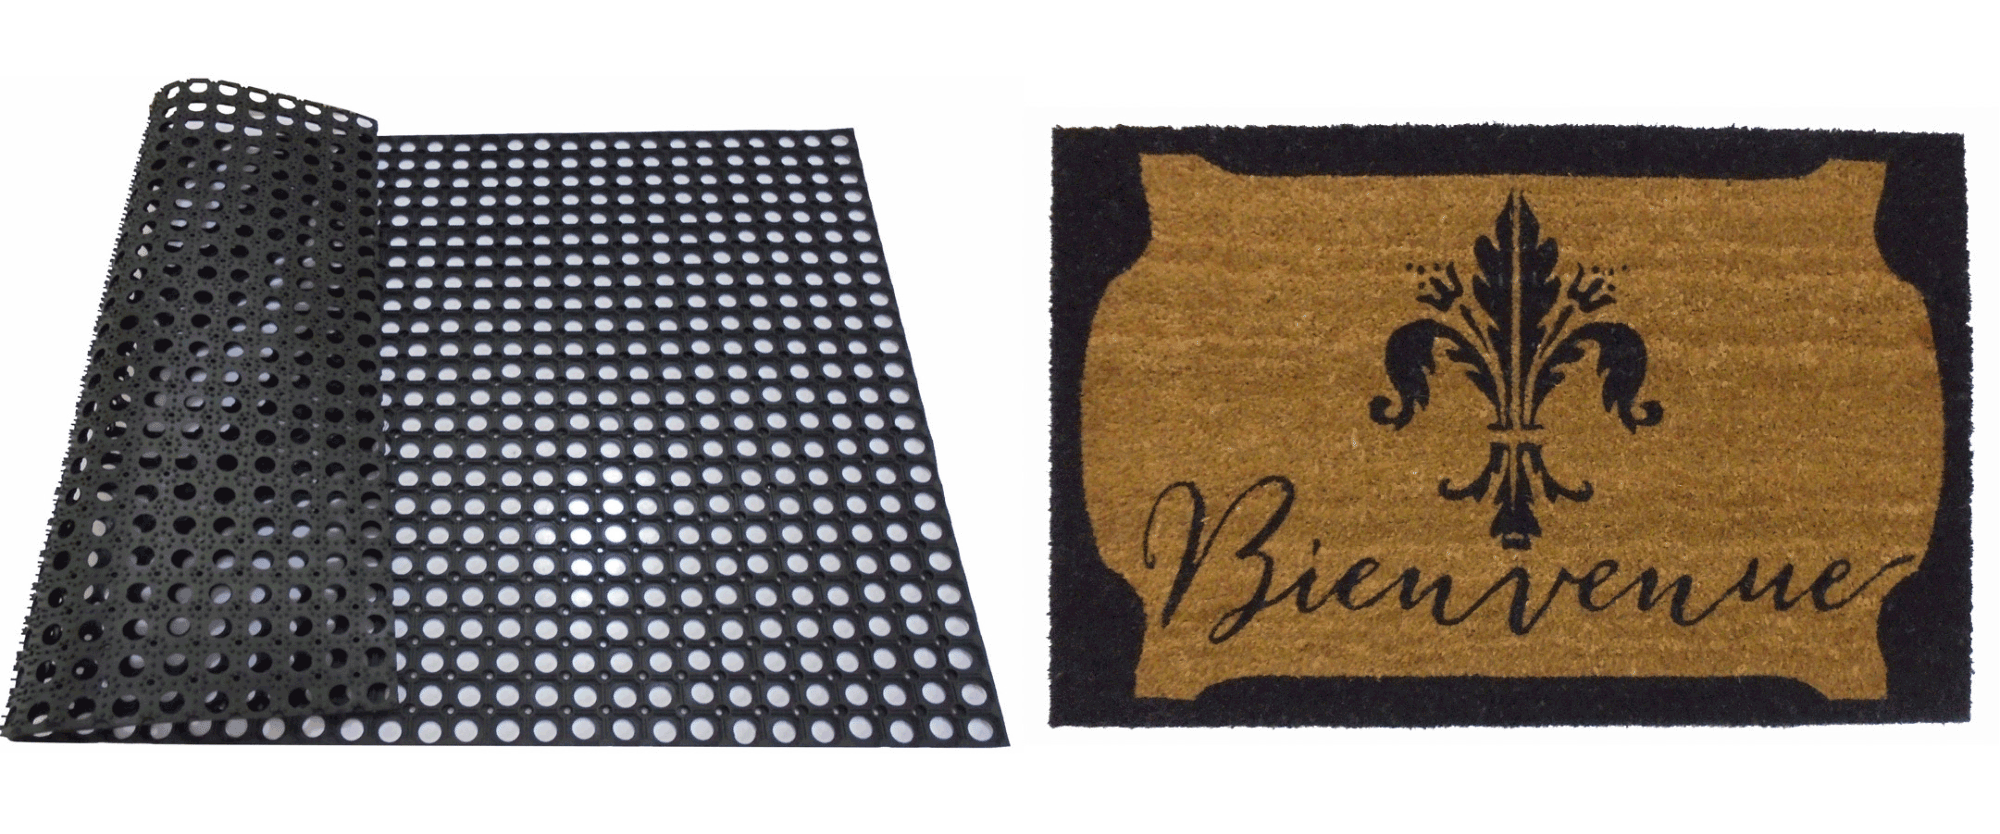 Rubber mats & Coir mats